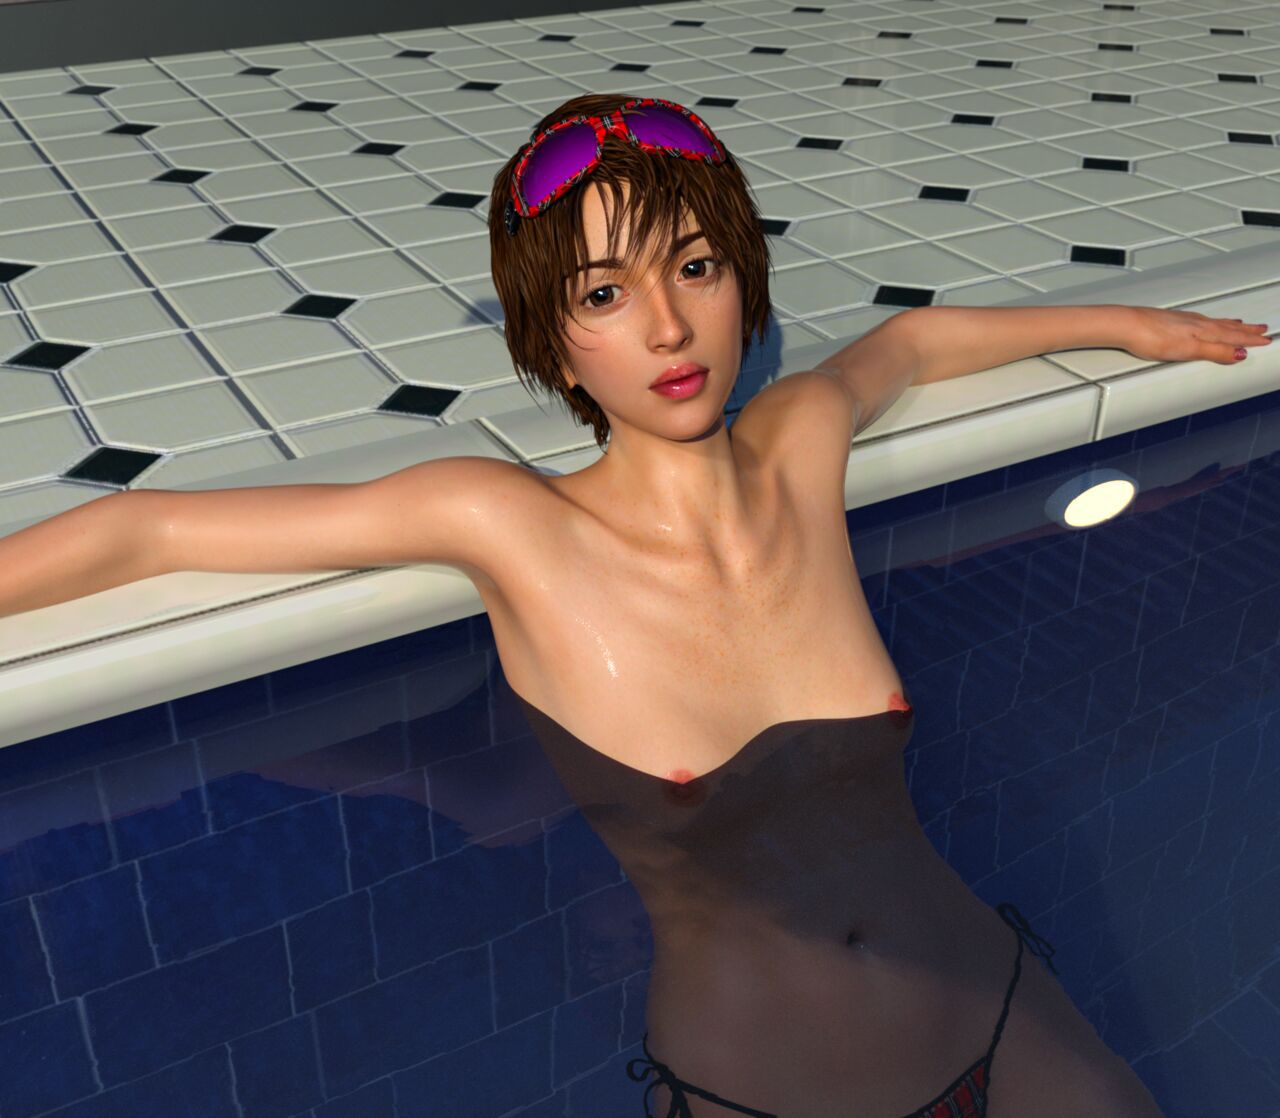 [DICK] Brunette Teen Girl at Pool (93839681) 19